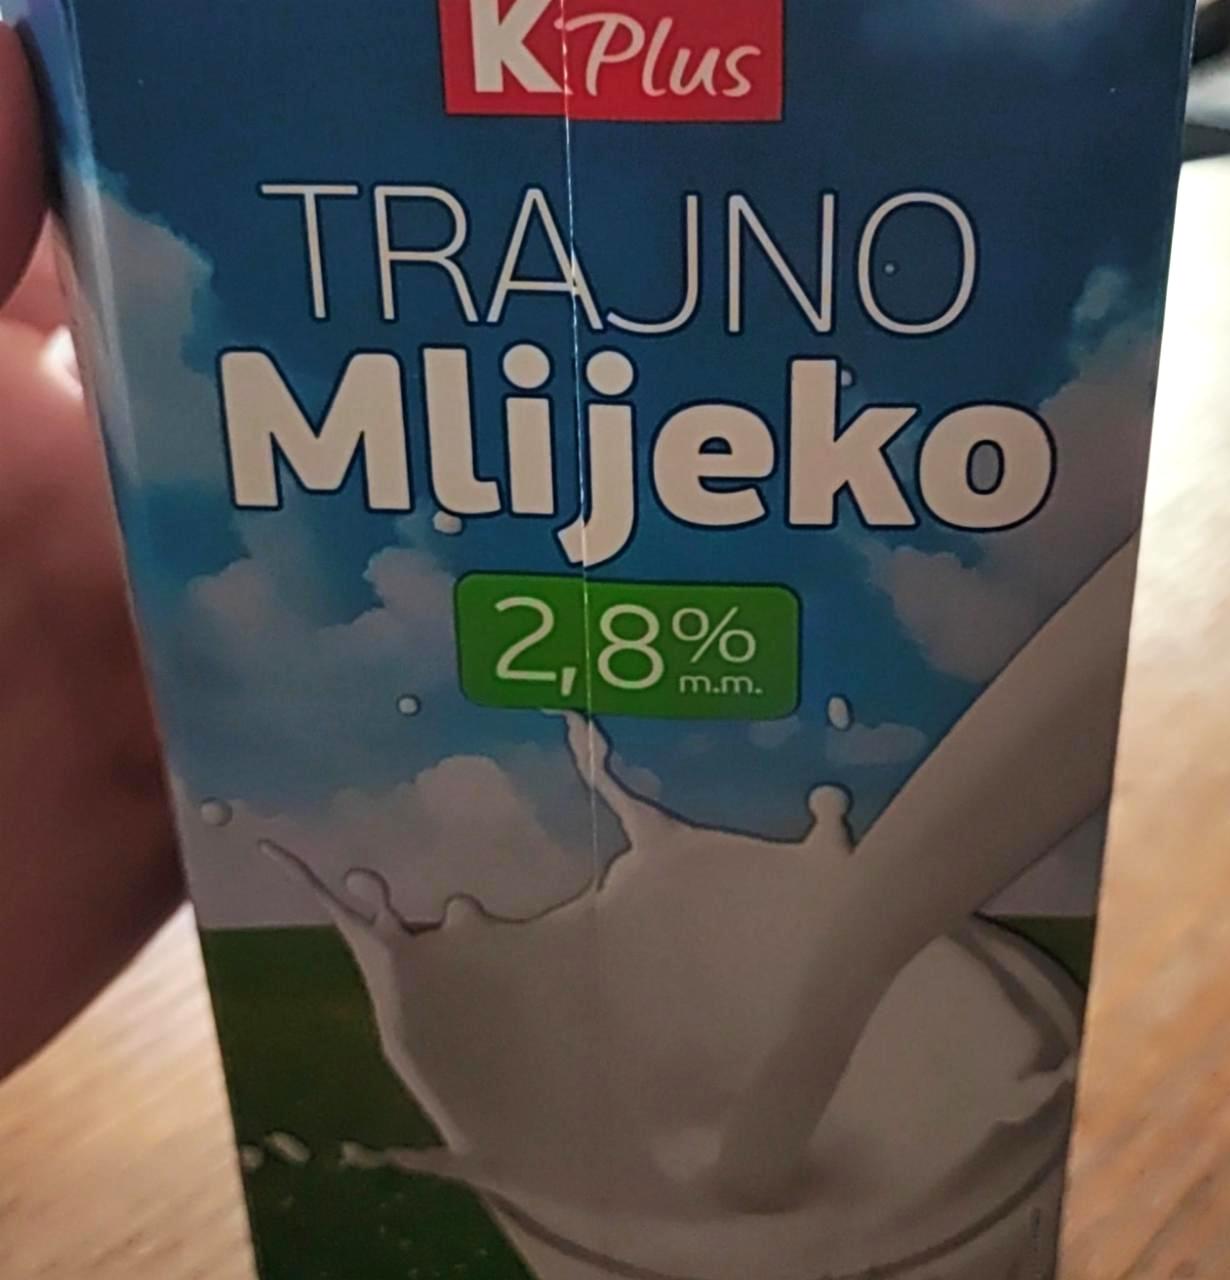 Képek - Trajno mlijeko 2,8% K Plus